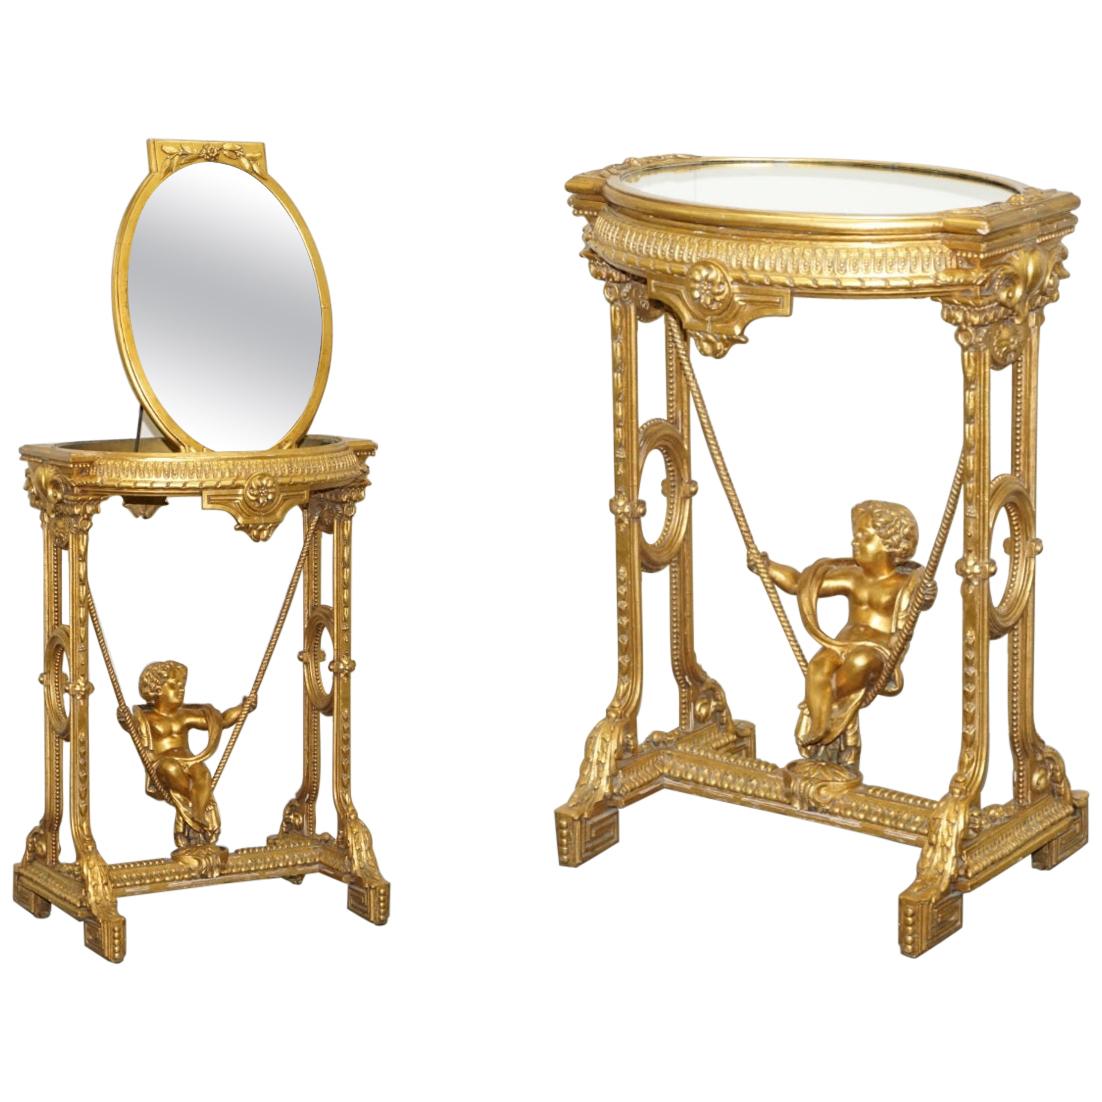 Table d'appoint en bois doré et doré avec plateau en miroir et pivotement de chérubin, vers 1920